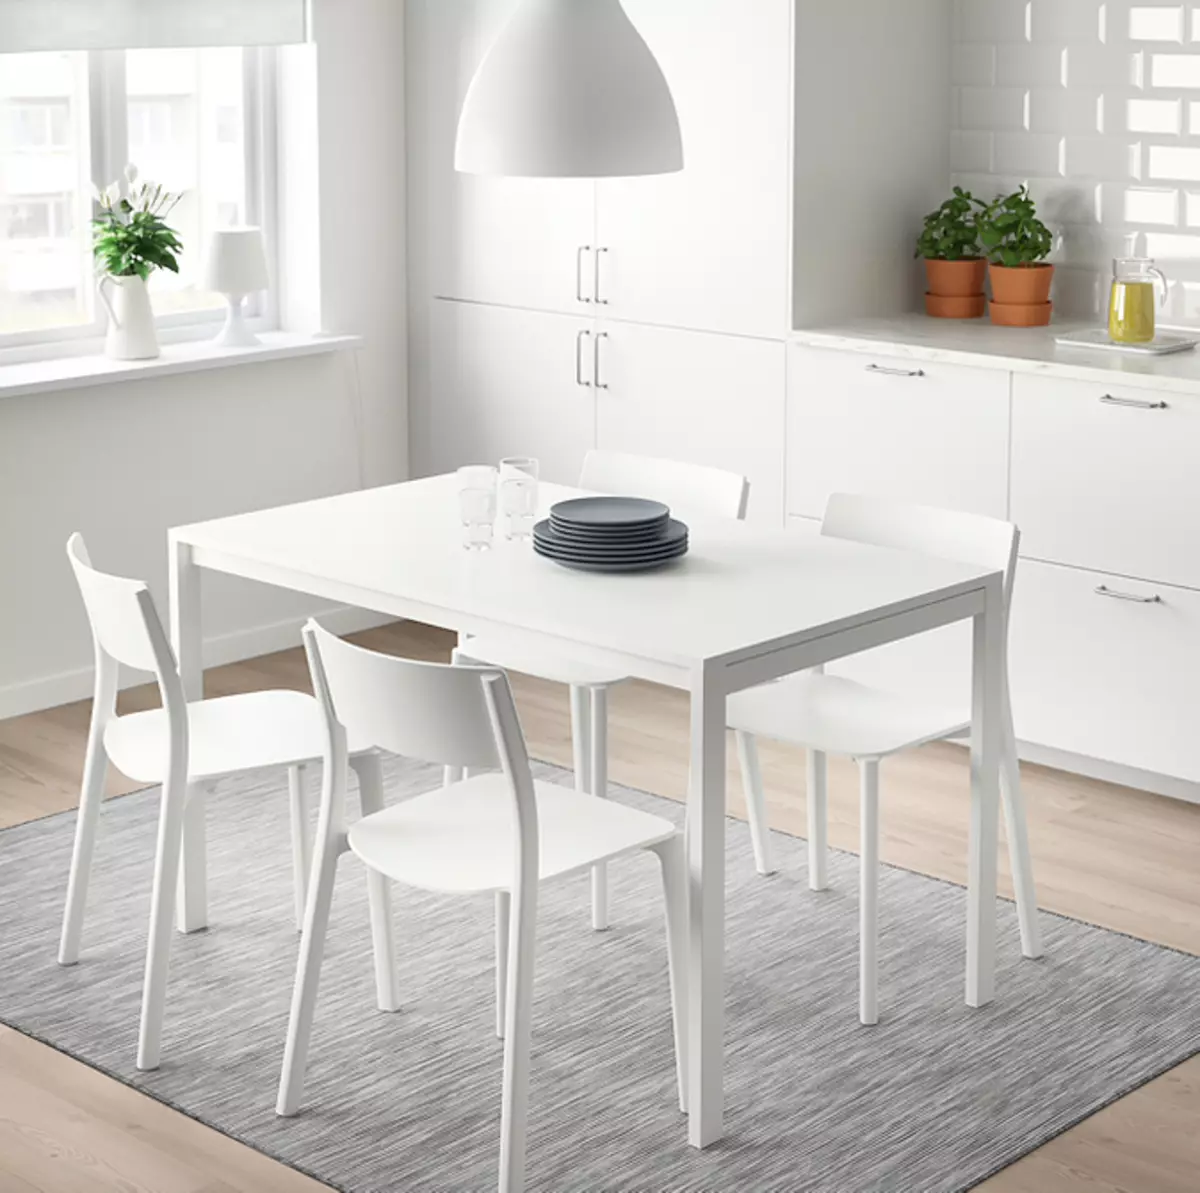 Đồ nội thất rẻ tiền, nhưng phong cách từ Ikea: 9 sản phẩm lên tới 3 000 rúp 8289_52